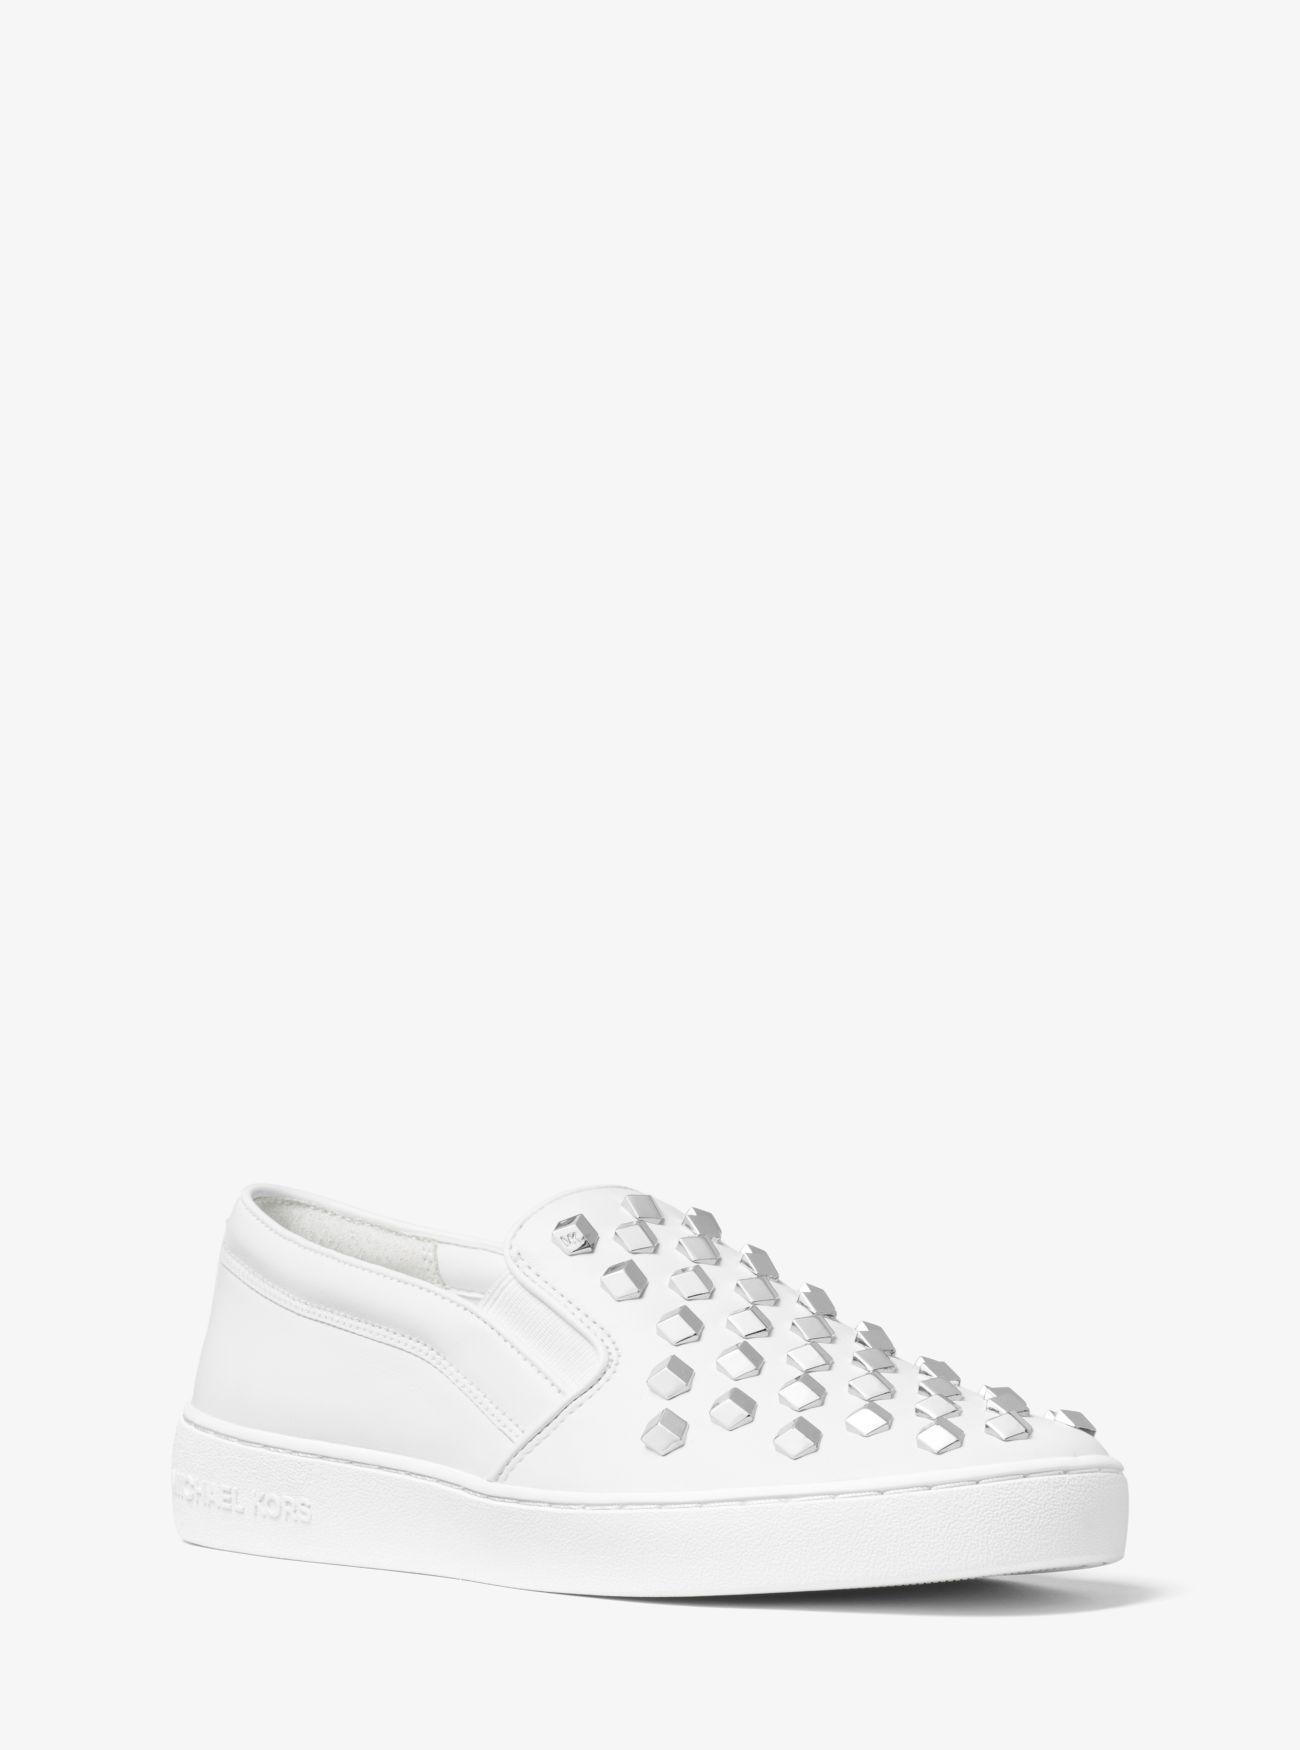 Michael Kors Keaton Studded Leather Slip-on Sneaker in White - Lyst